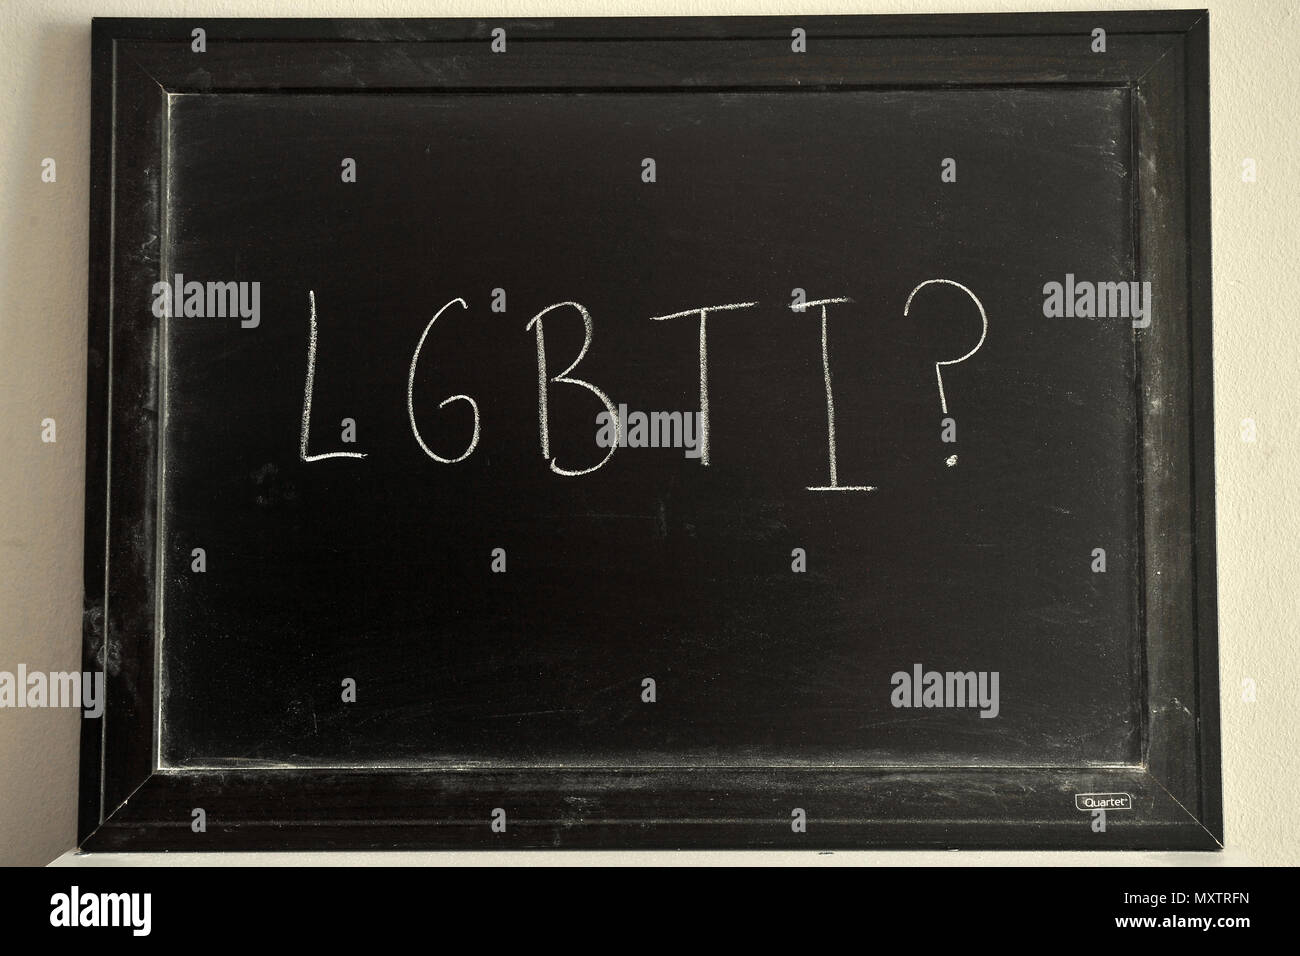 LGBTI? Escrito en blanco tiza en una pizarra. Foto de stock